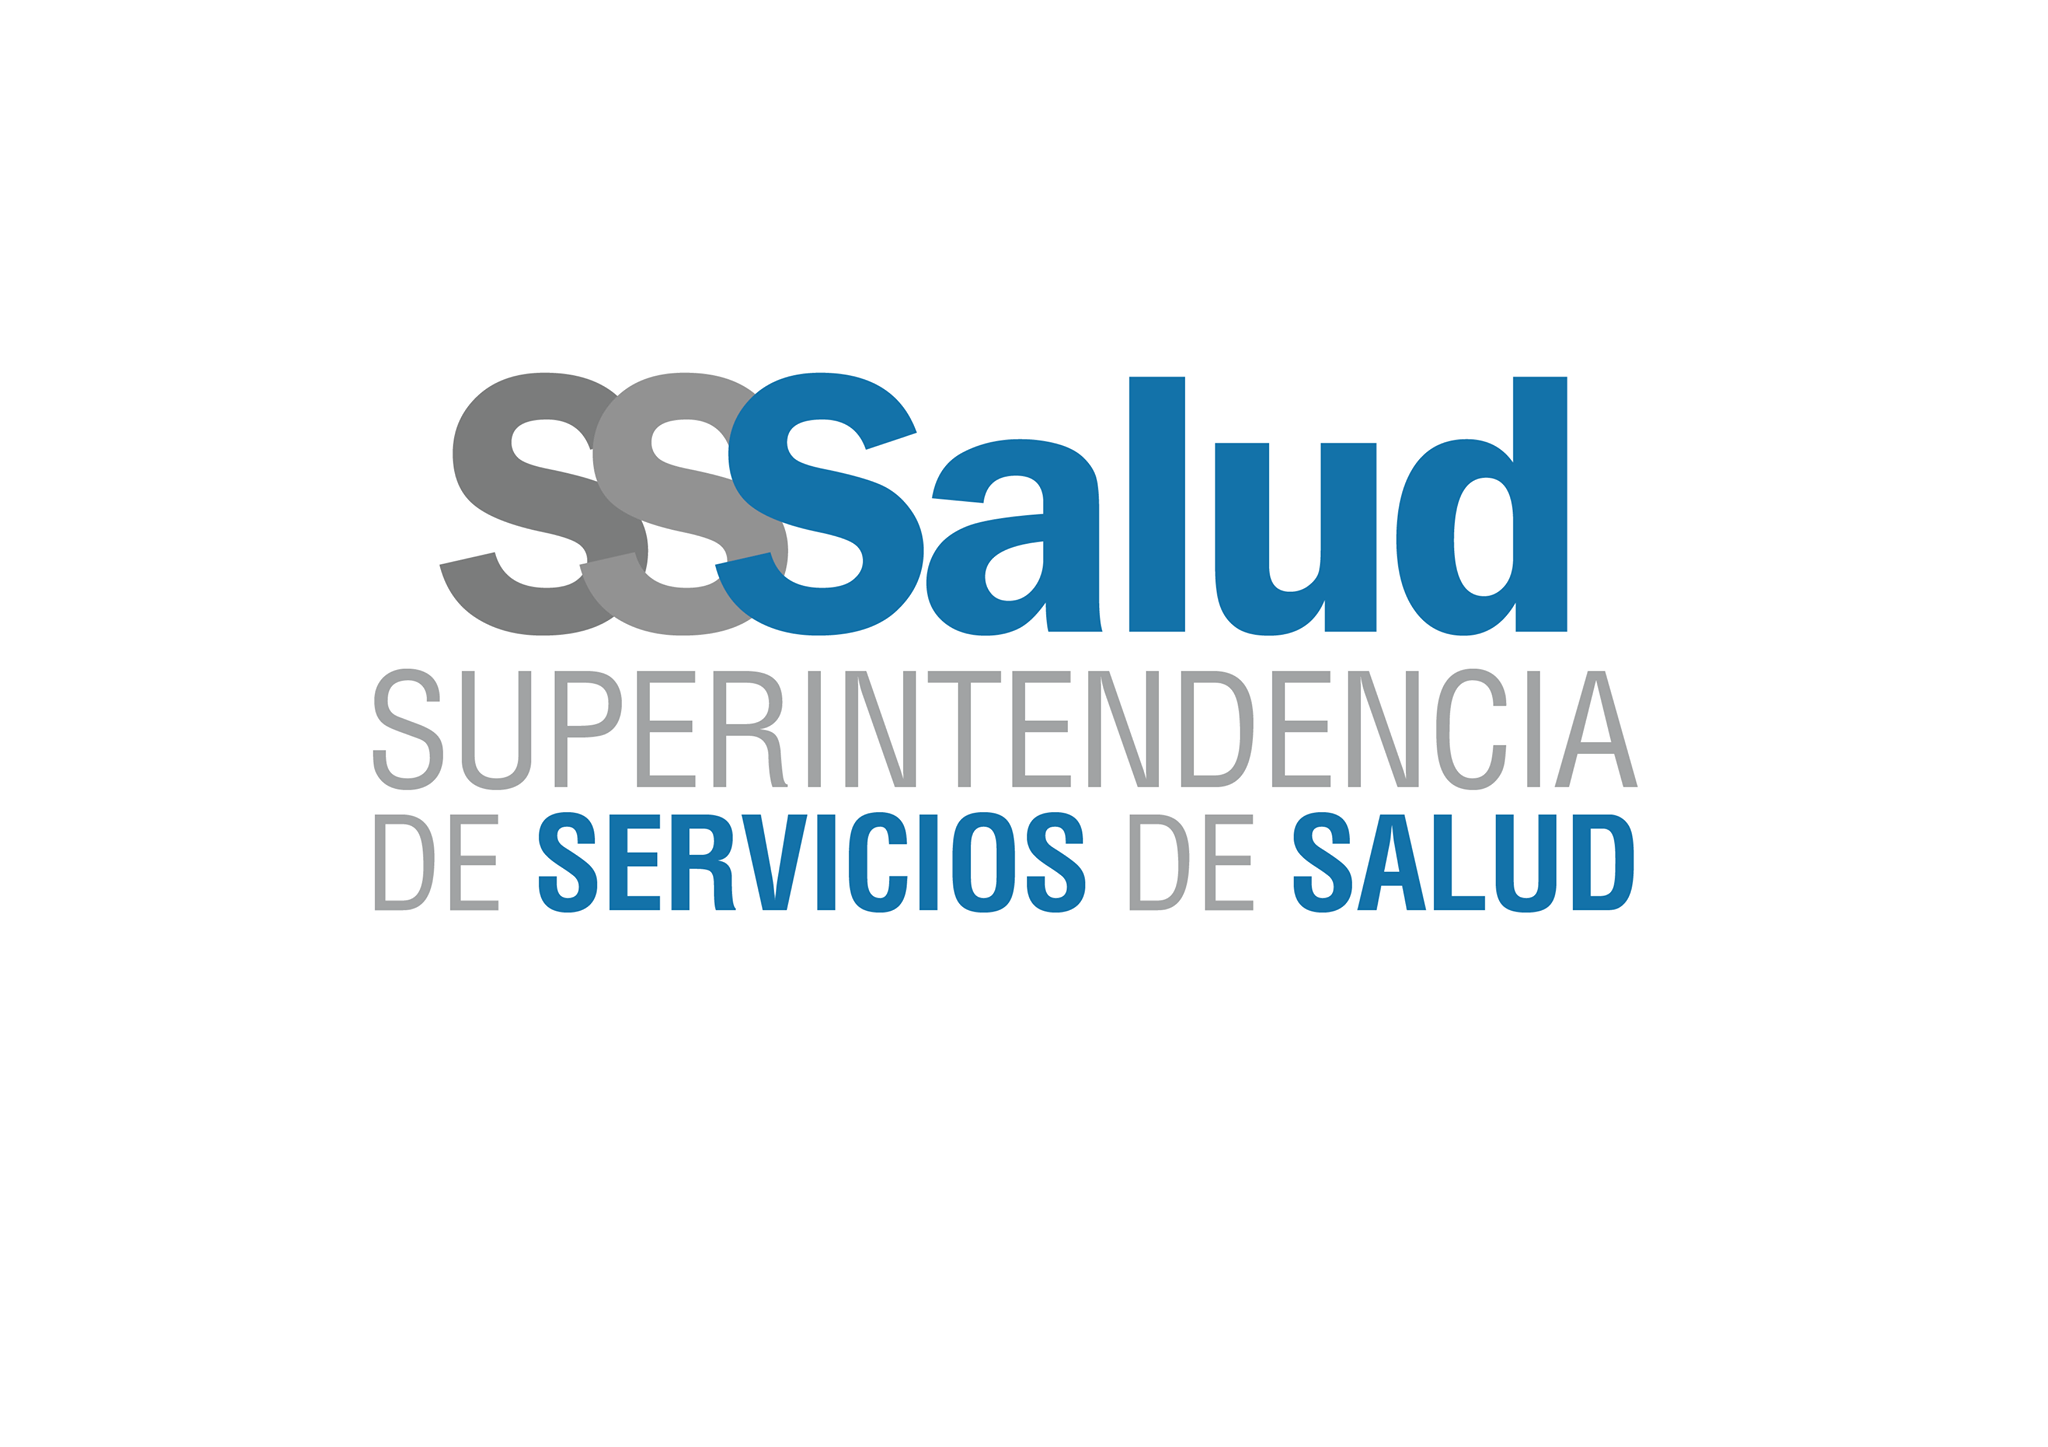 UAS - UNIÓN ARGENTINA DE SALUD